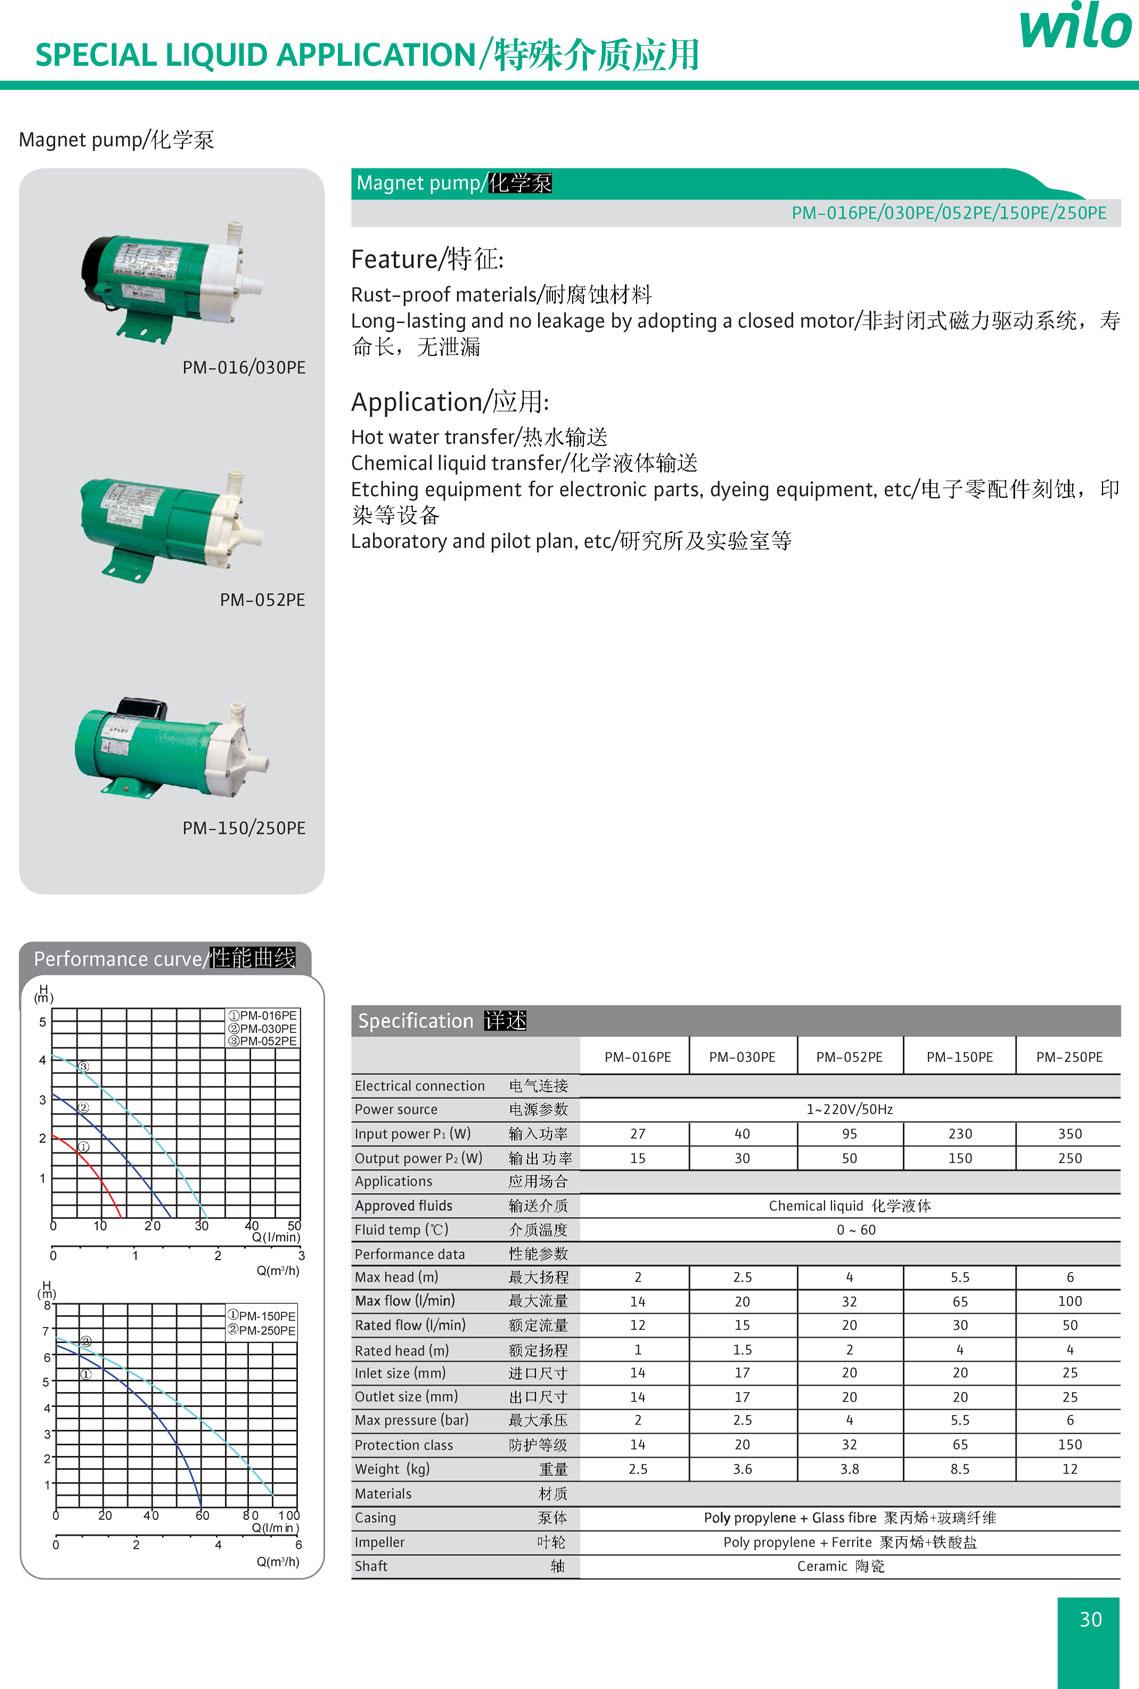 PM-016/030PE 威乐化学泵 2